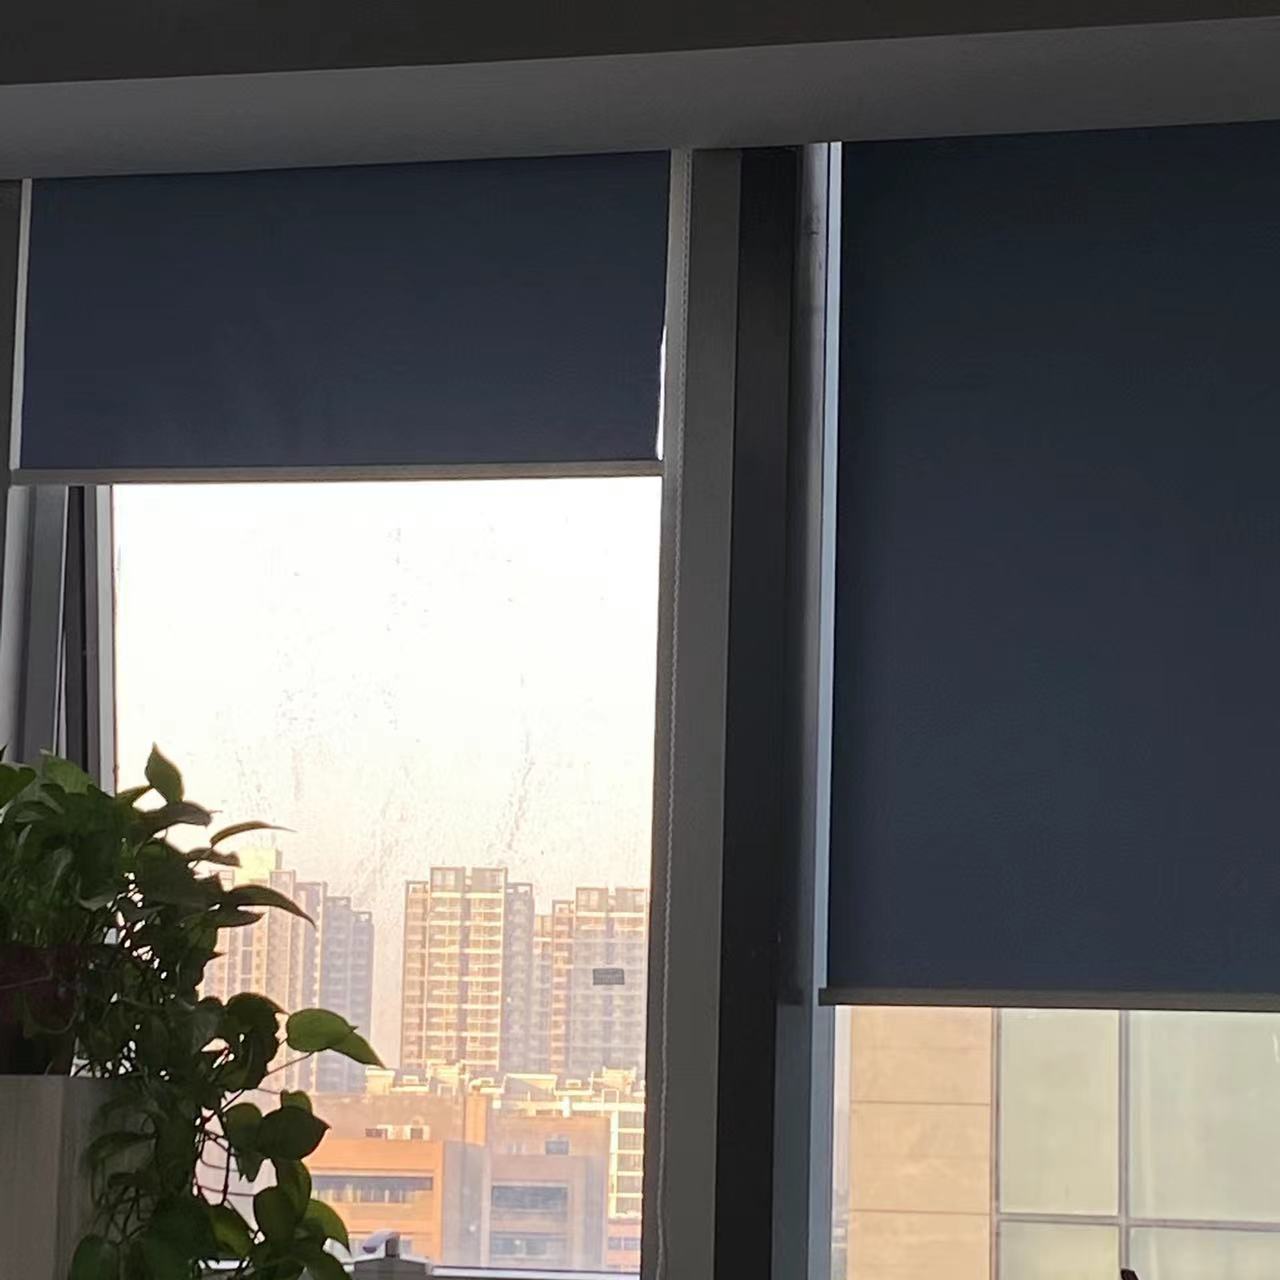 双层玻璃窗户怎么擦干净 双层玻璃起雾是质量问题吗